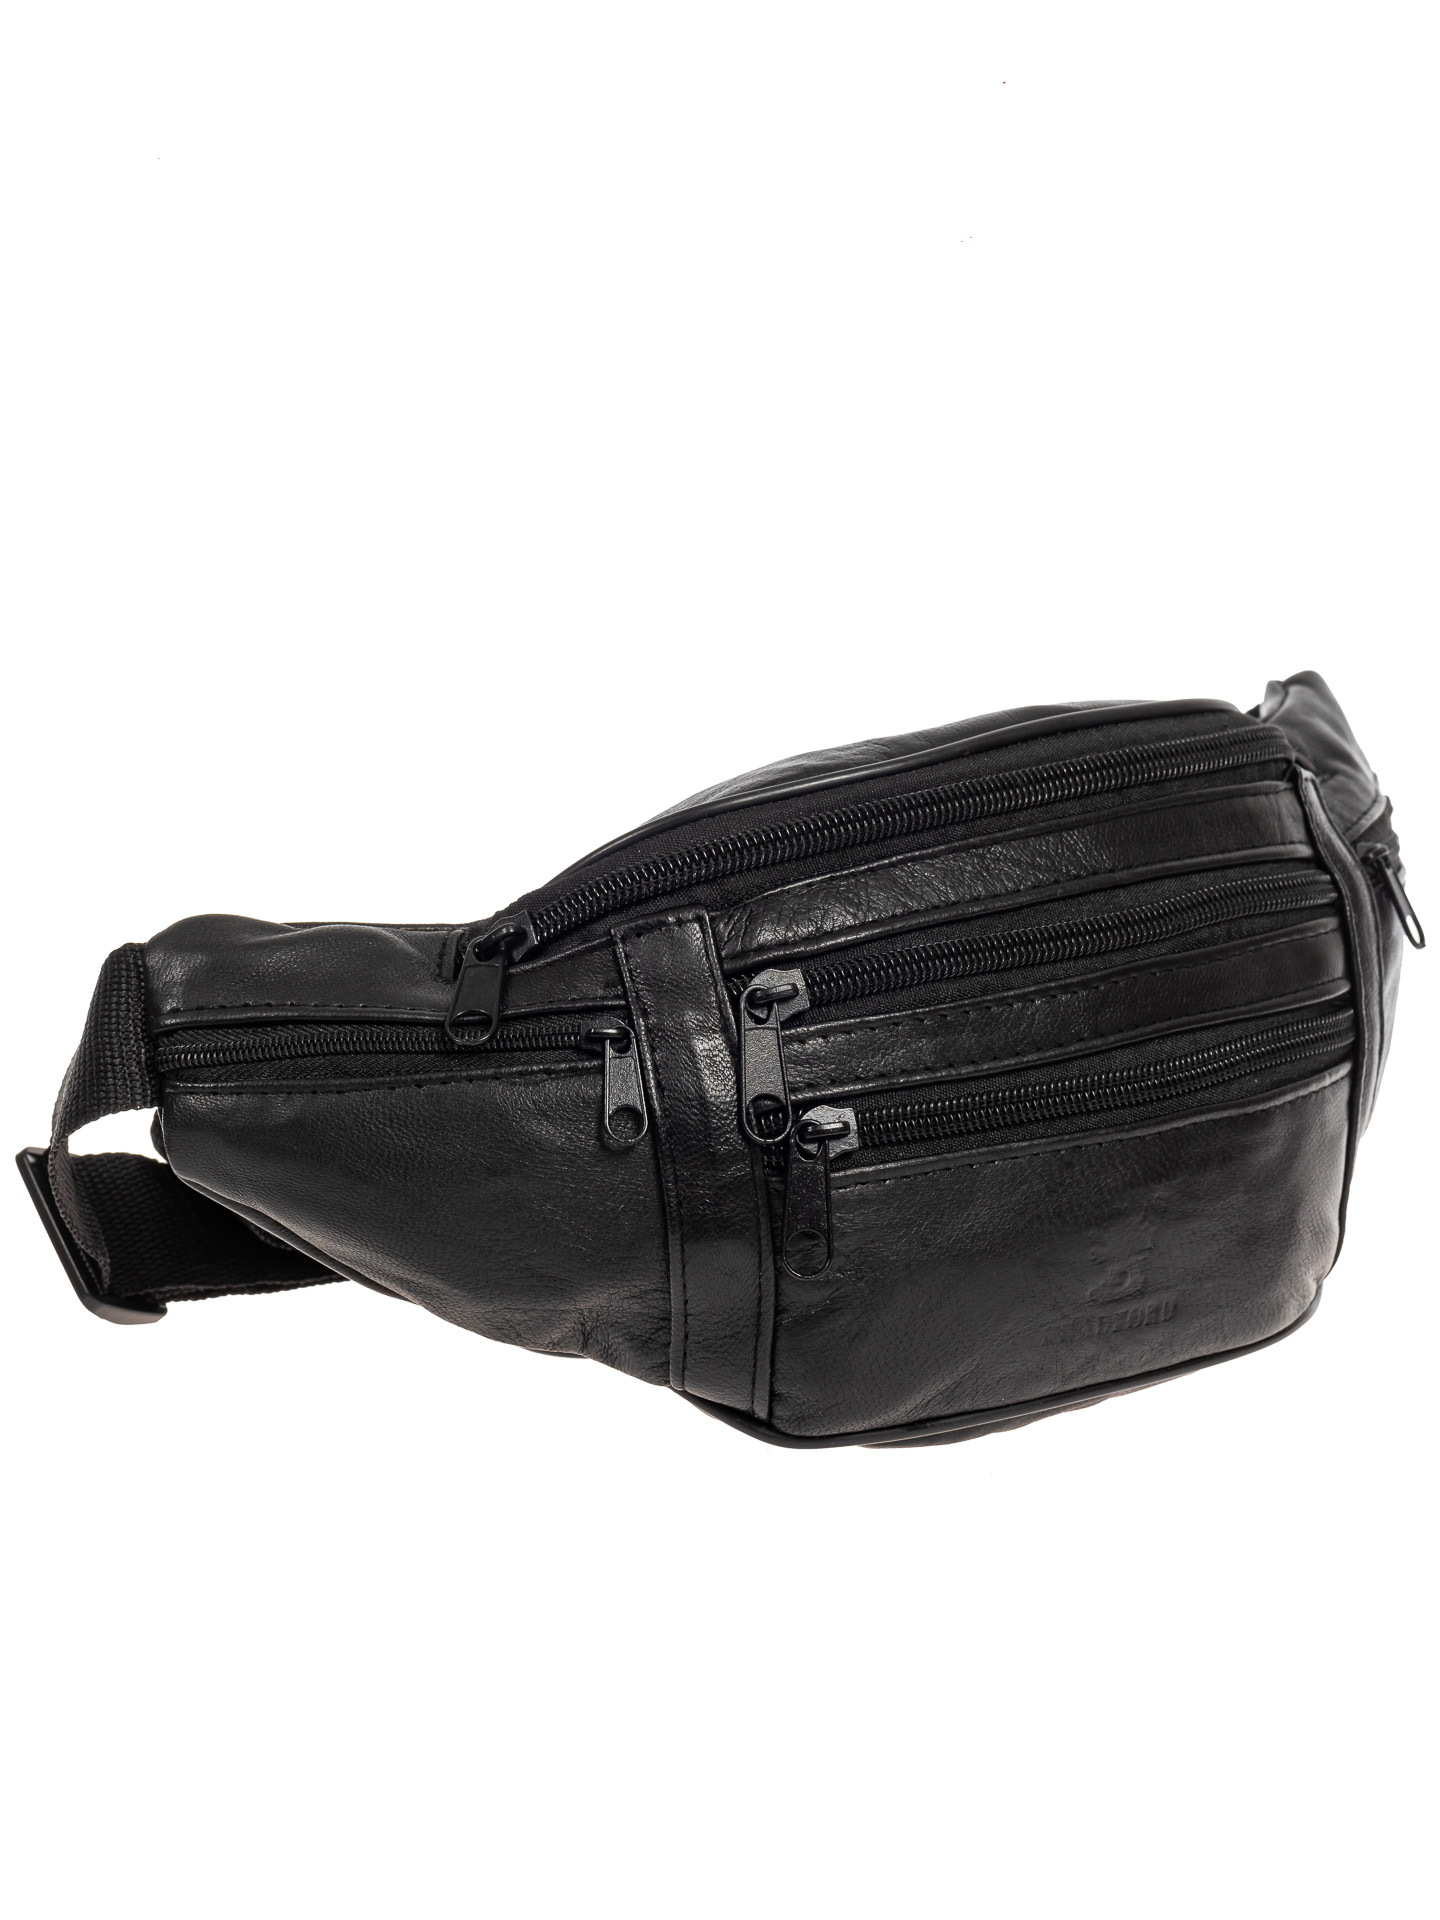 Поясная мужская сумка из мягкой натуральной кожи, цвет чёрный